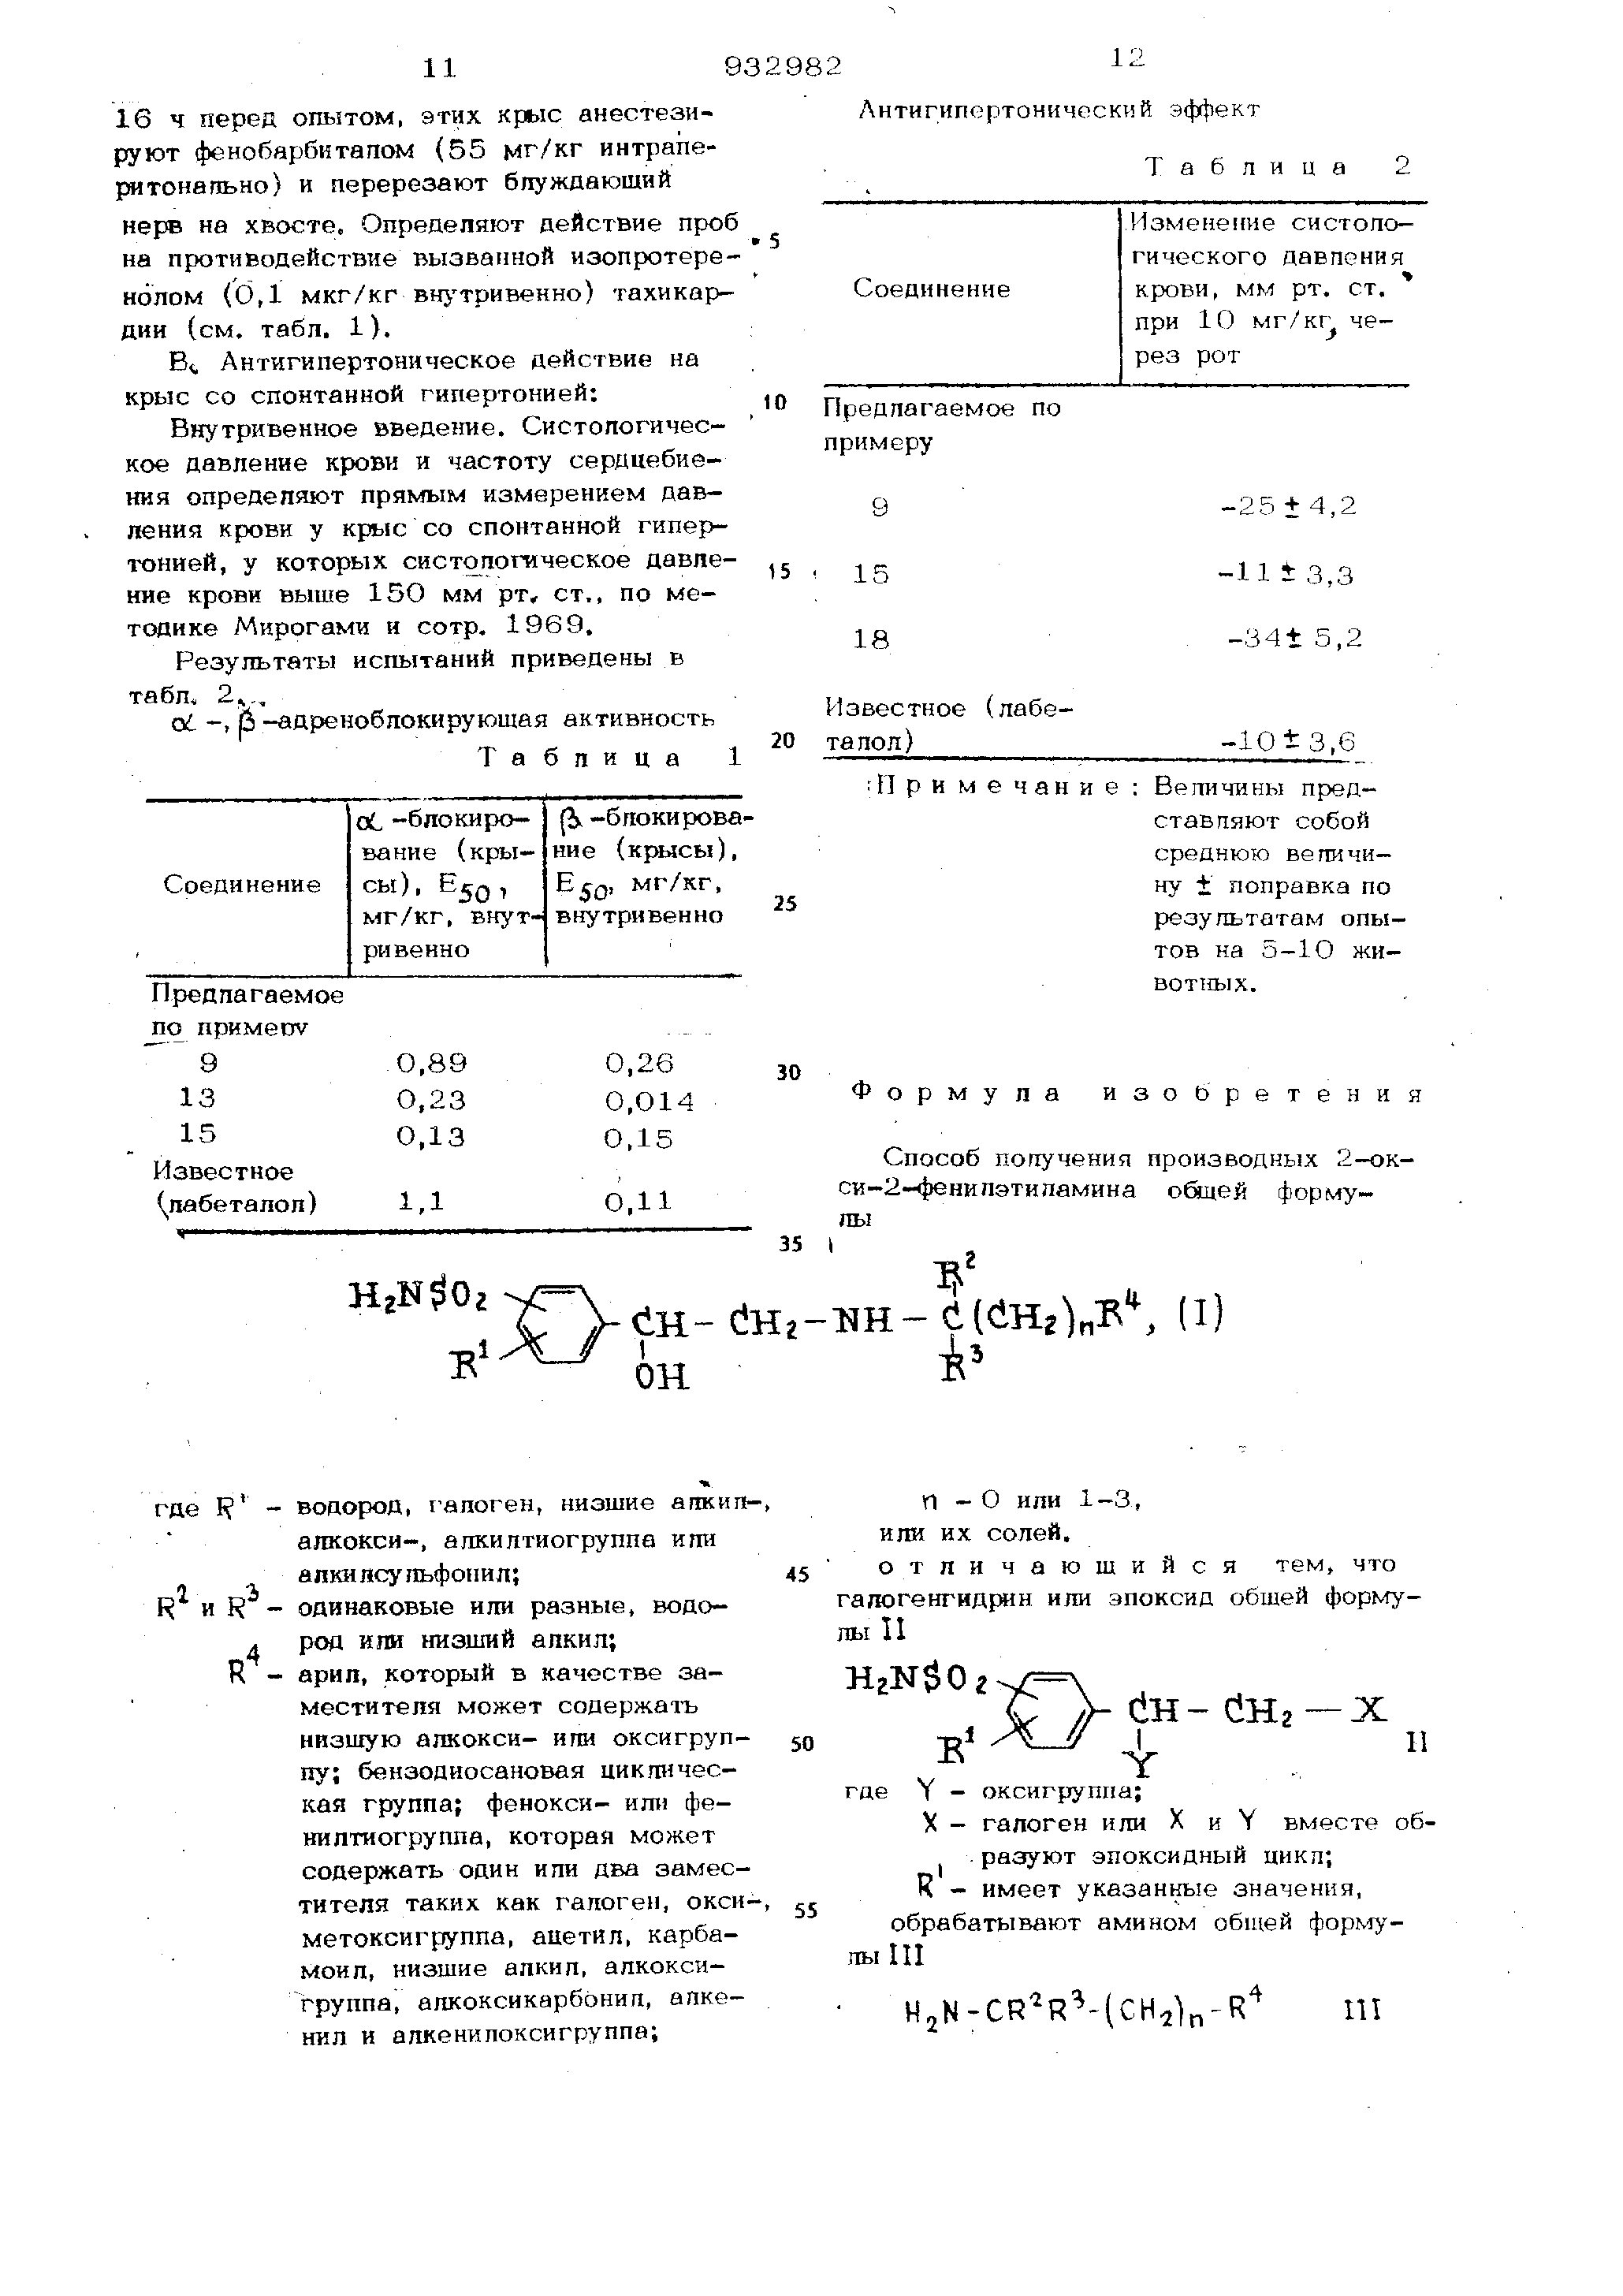 SU932982A3 - Способ получения производных 2-окси-2-фенилэтиламина или их солей - Яндекс.Патенты